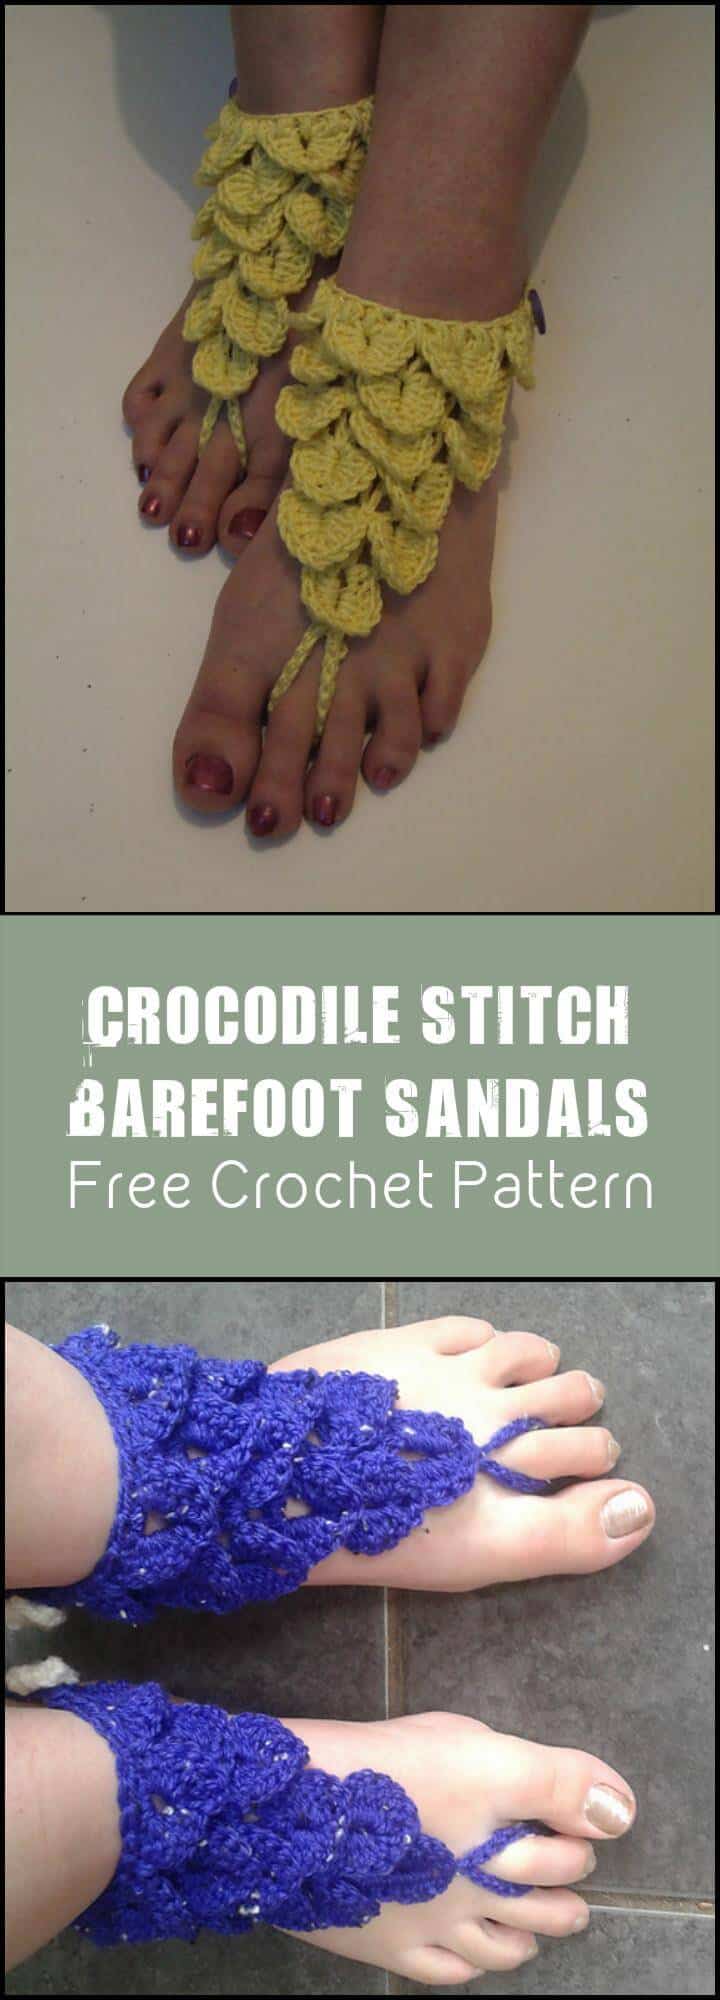 Crocodile Stitch Barefoot Sandals Free Crochet Pattern